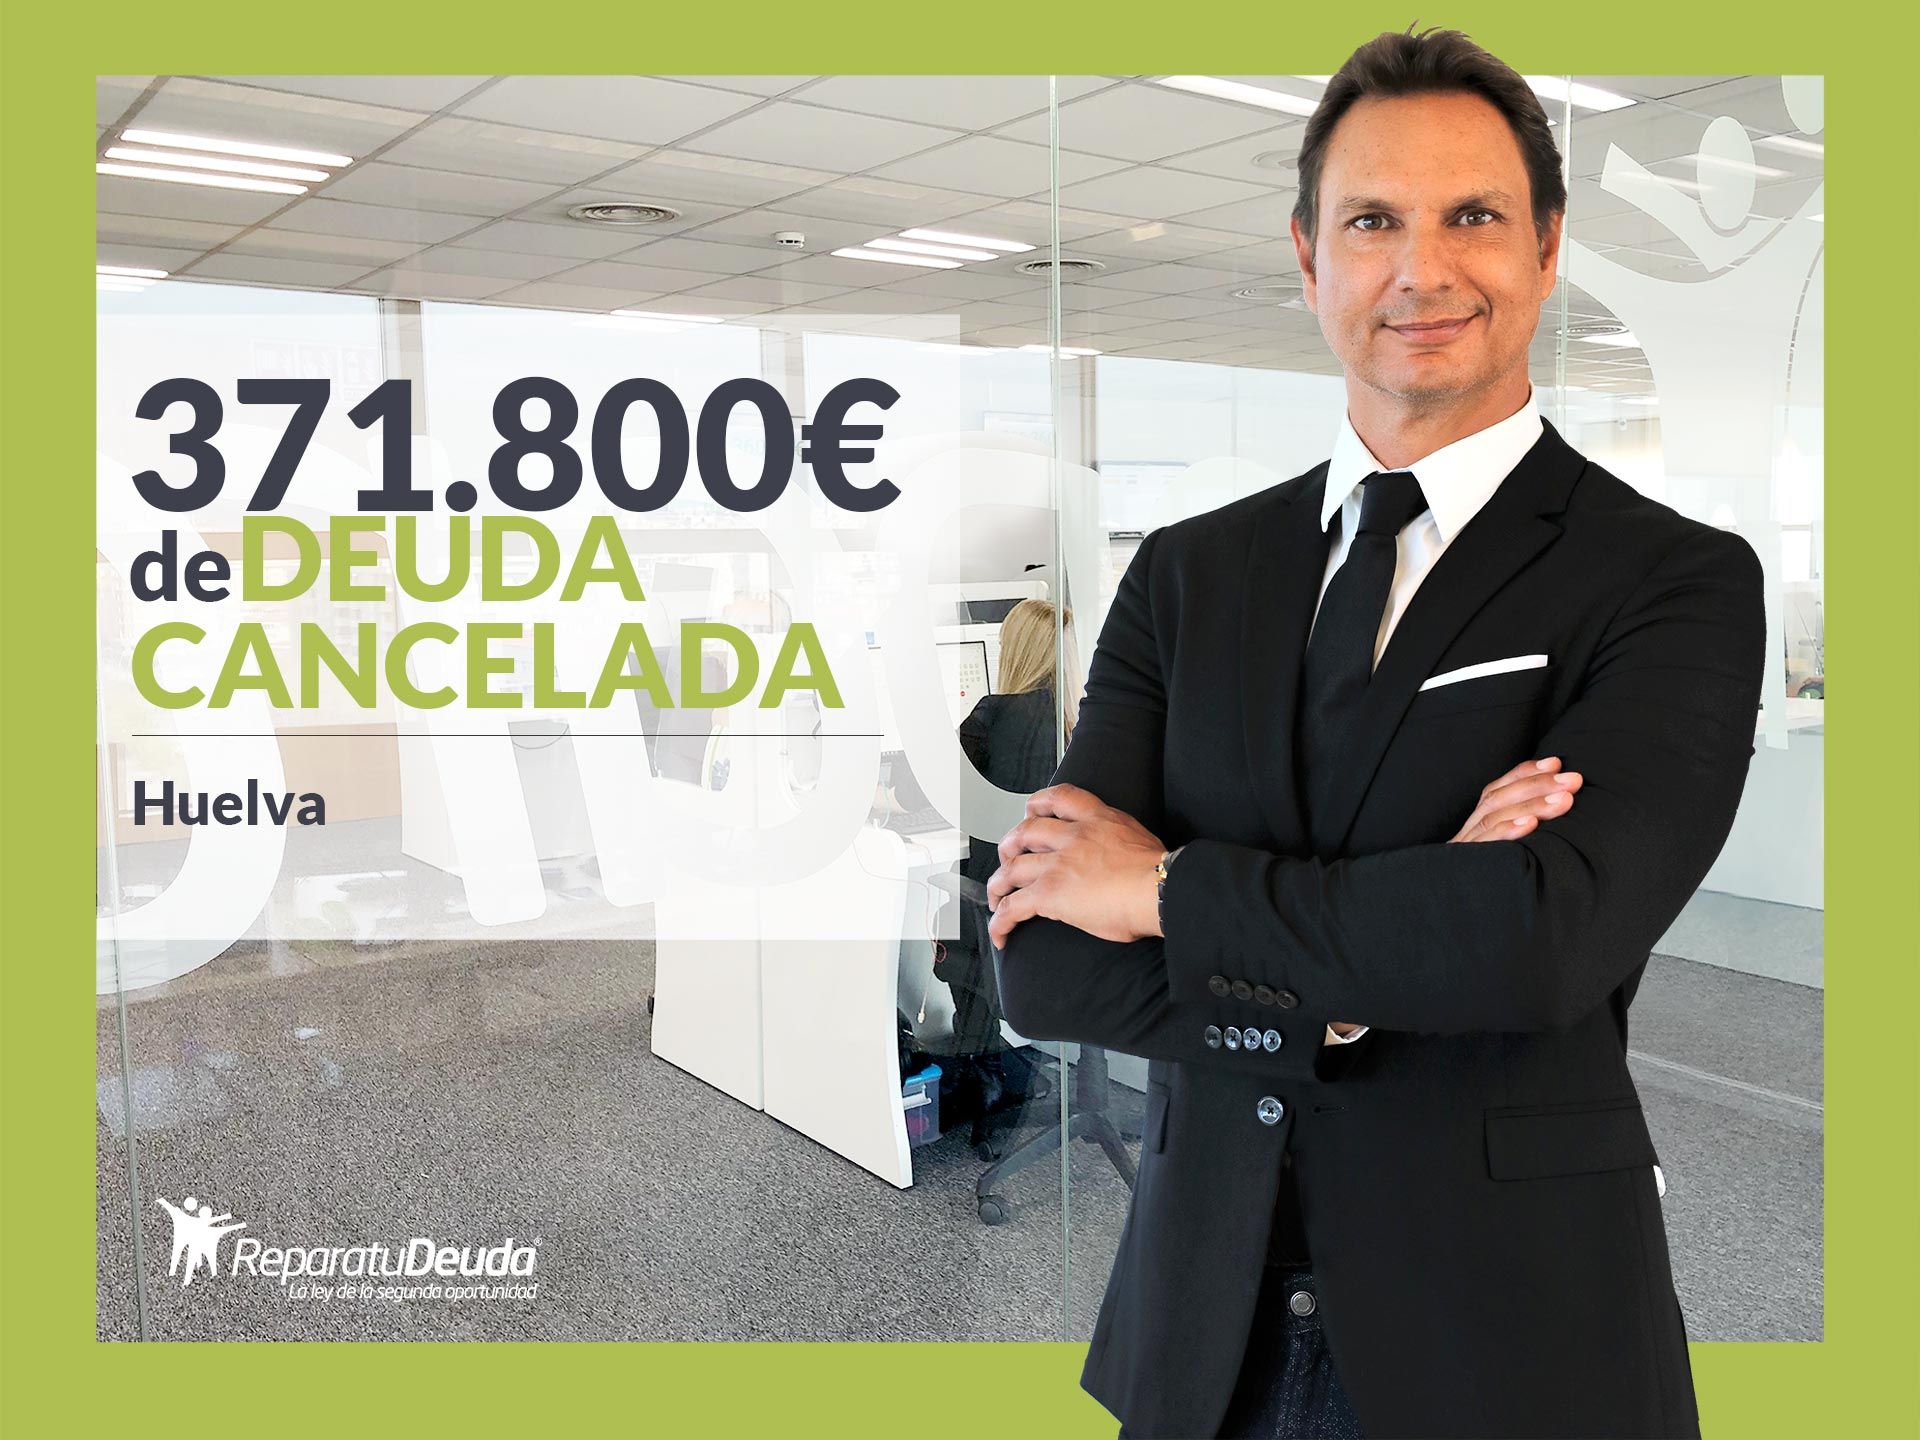 Repara tu Deuda Abogados cancela 371.800? en Huelva con la Ley de Segunda Oportunidad